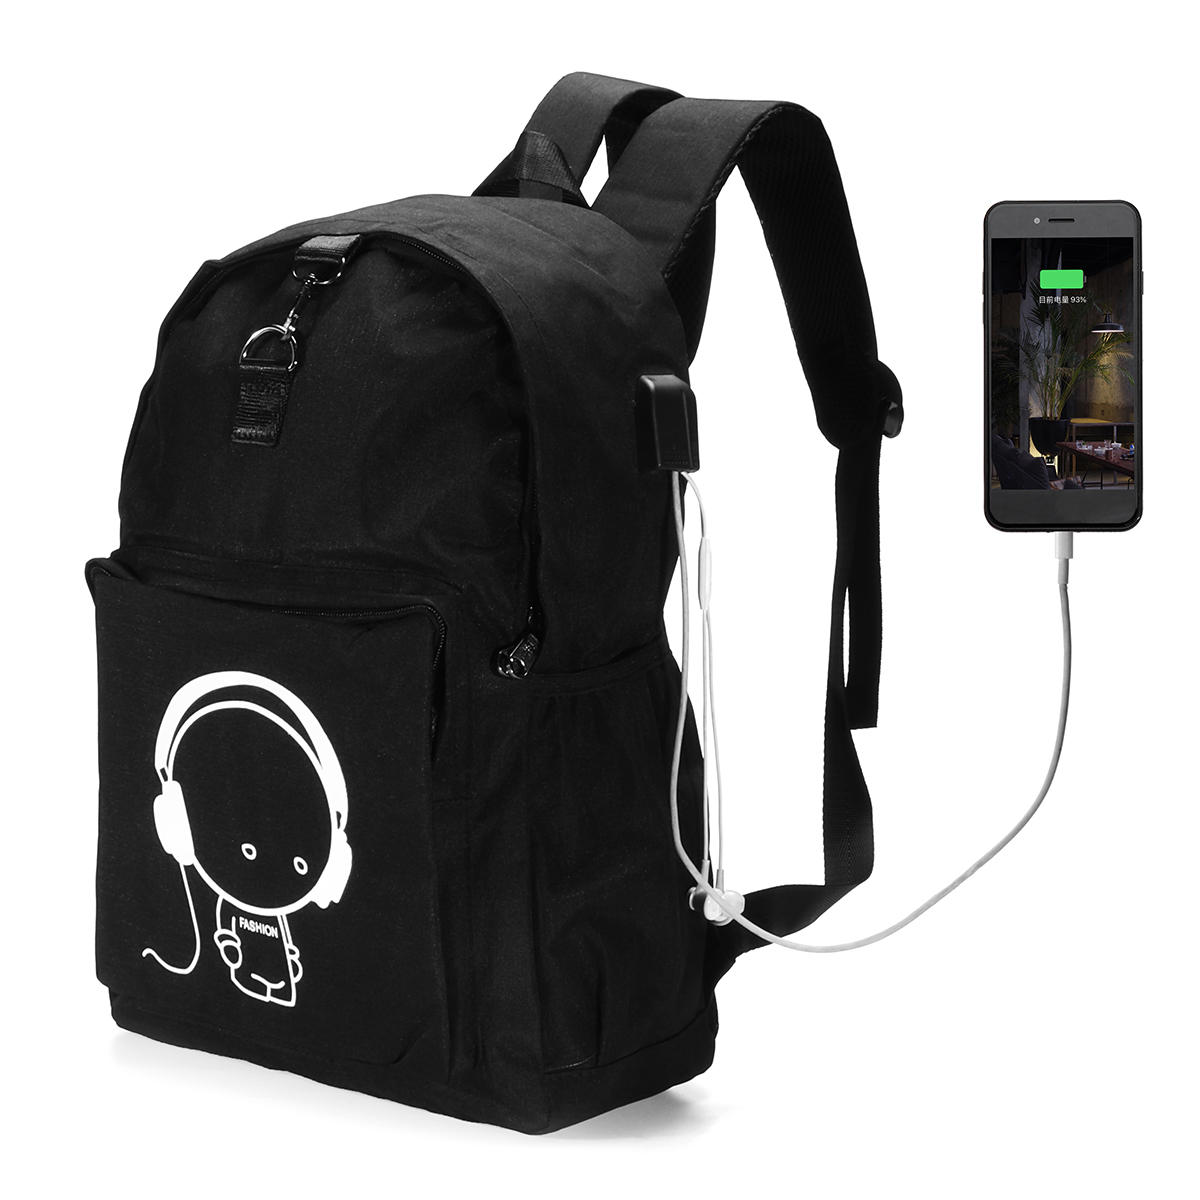 14インチナイトルーニートラベルスクールラップトップバックパックUSB充電イヤホンポート盗難防止バッグ  